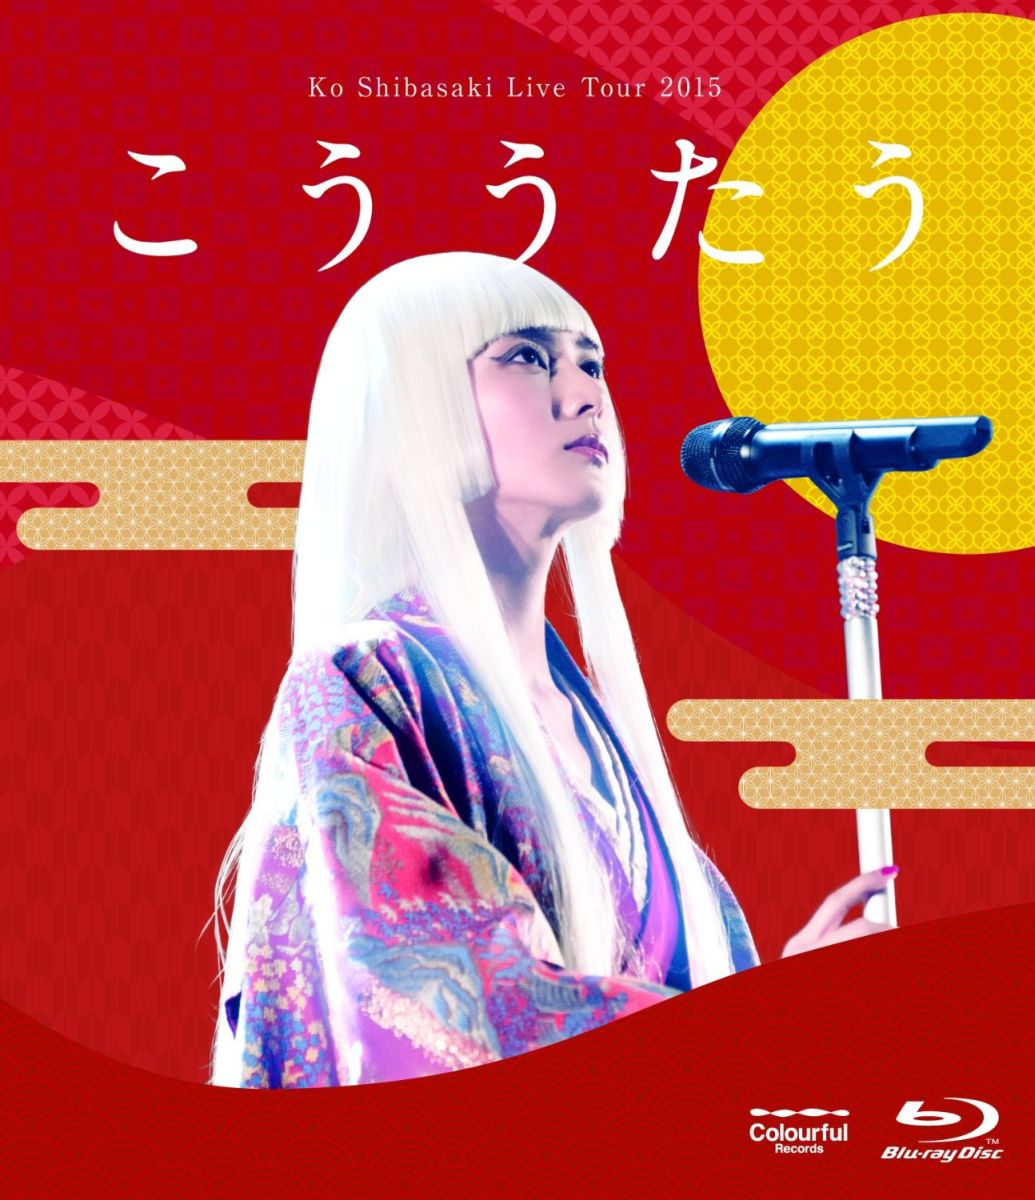 Ko Shibasaki Live Tour 2015 ghyՁzyBlu-rayz [ čRE ] - yVubNX